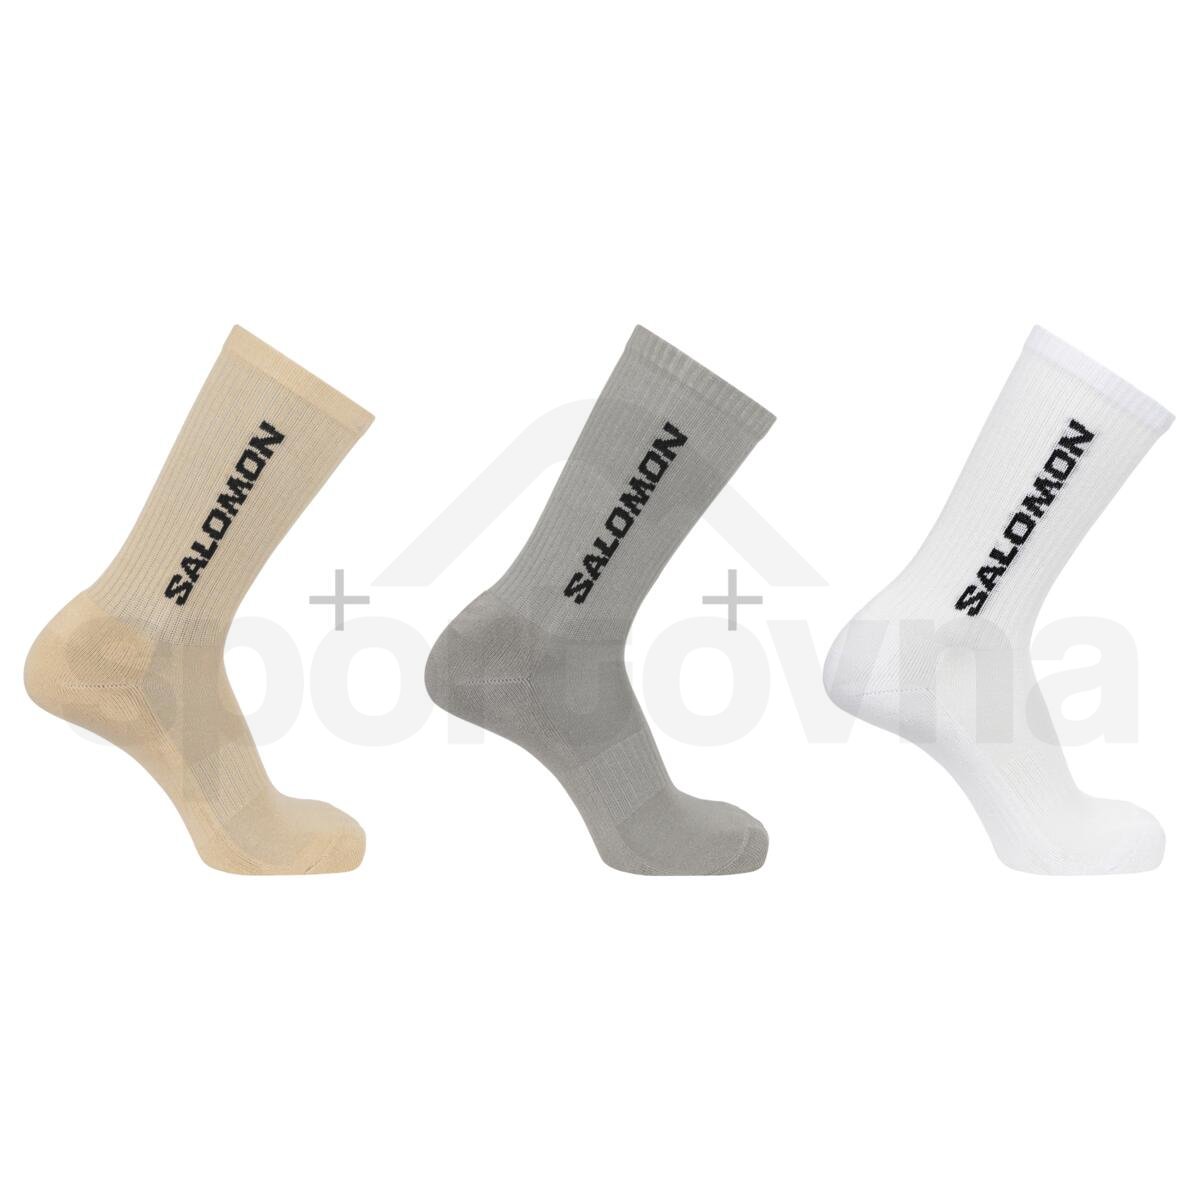 Ponožky Salomon Everyday Crew 3-Pack - bílá/šedá/hnědá